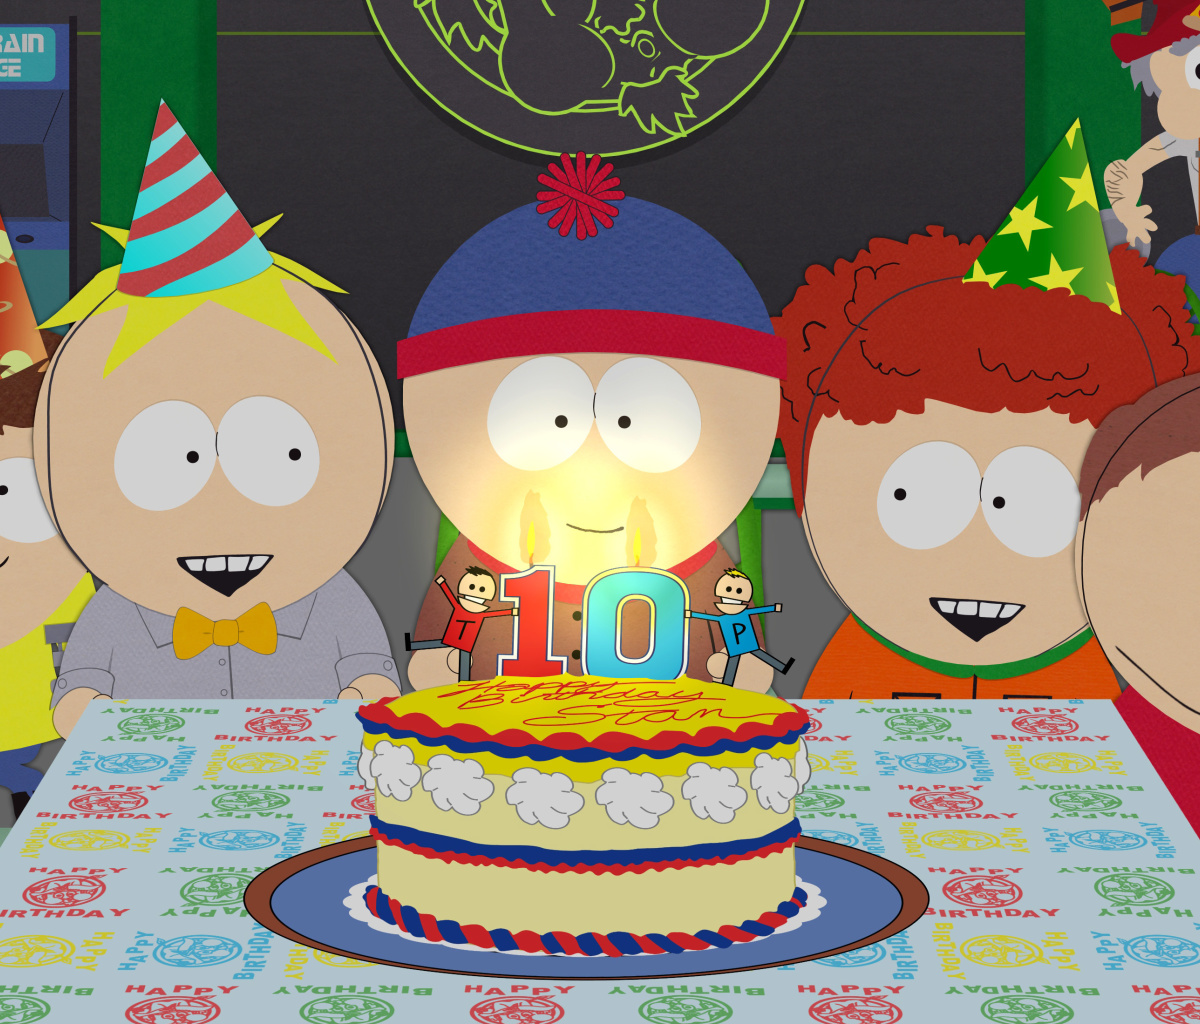 Das South Park Season 15 Stans Party Wallpaper 1200x1024